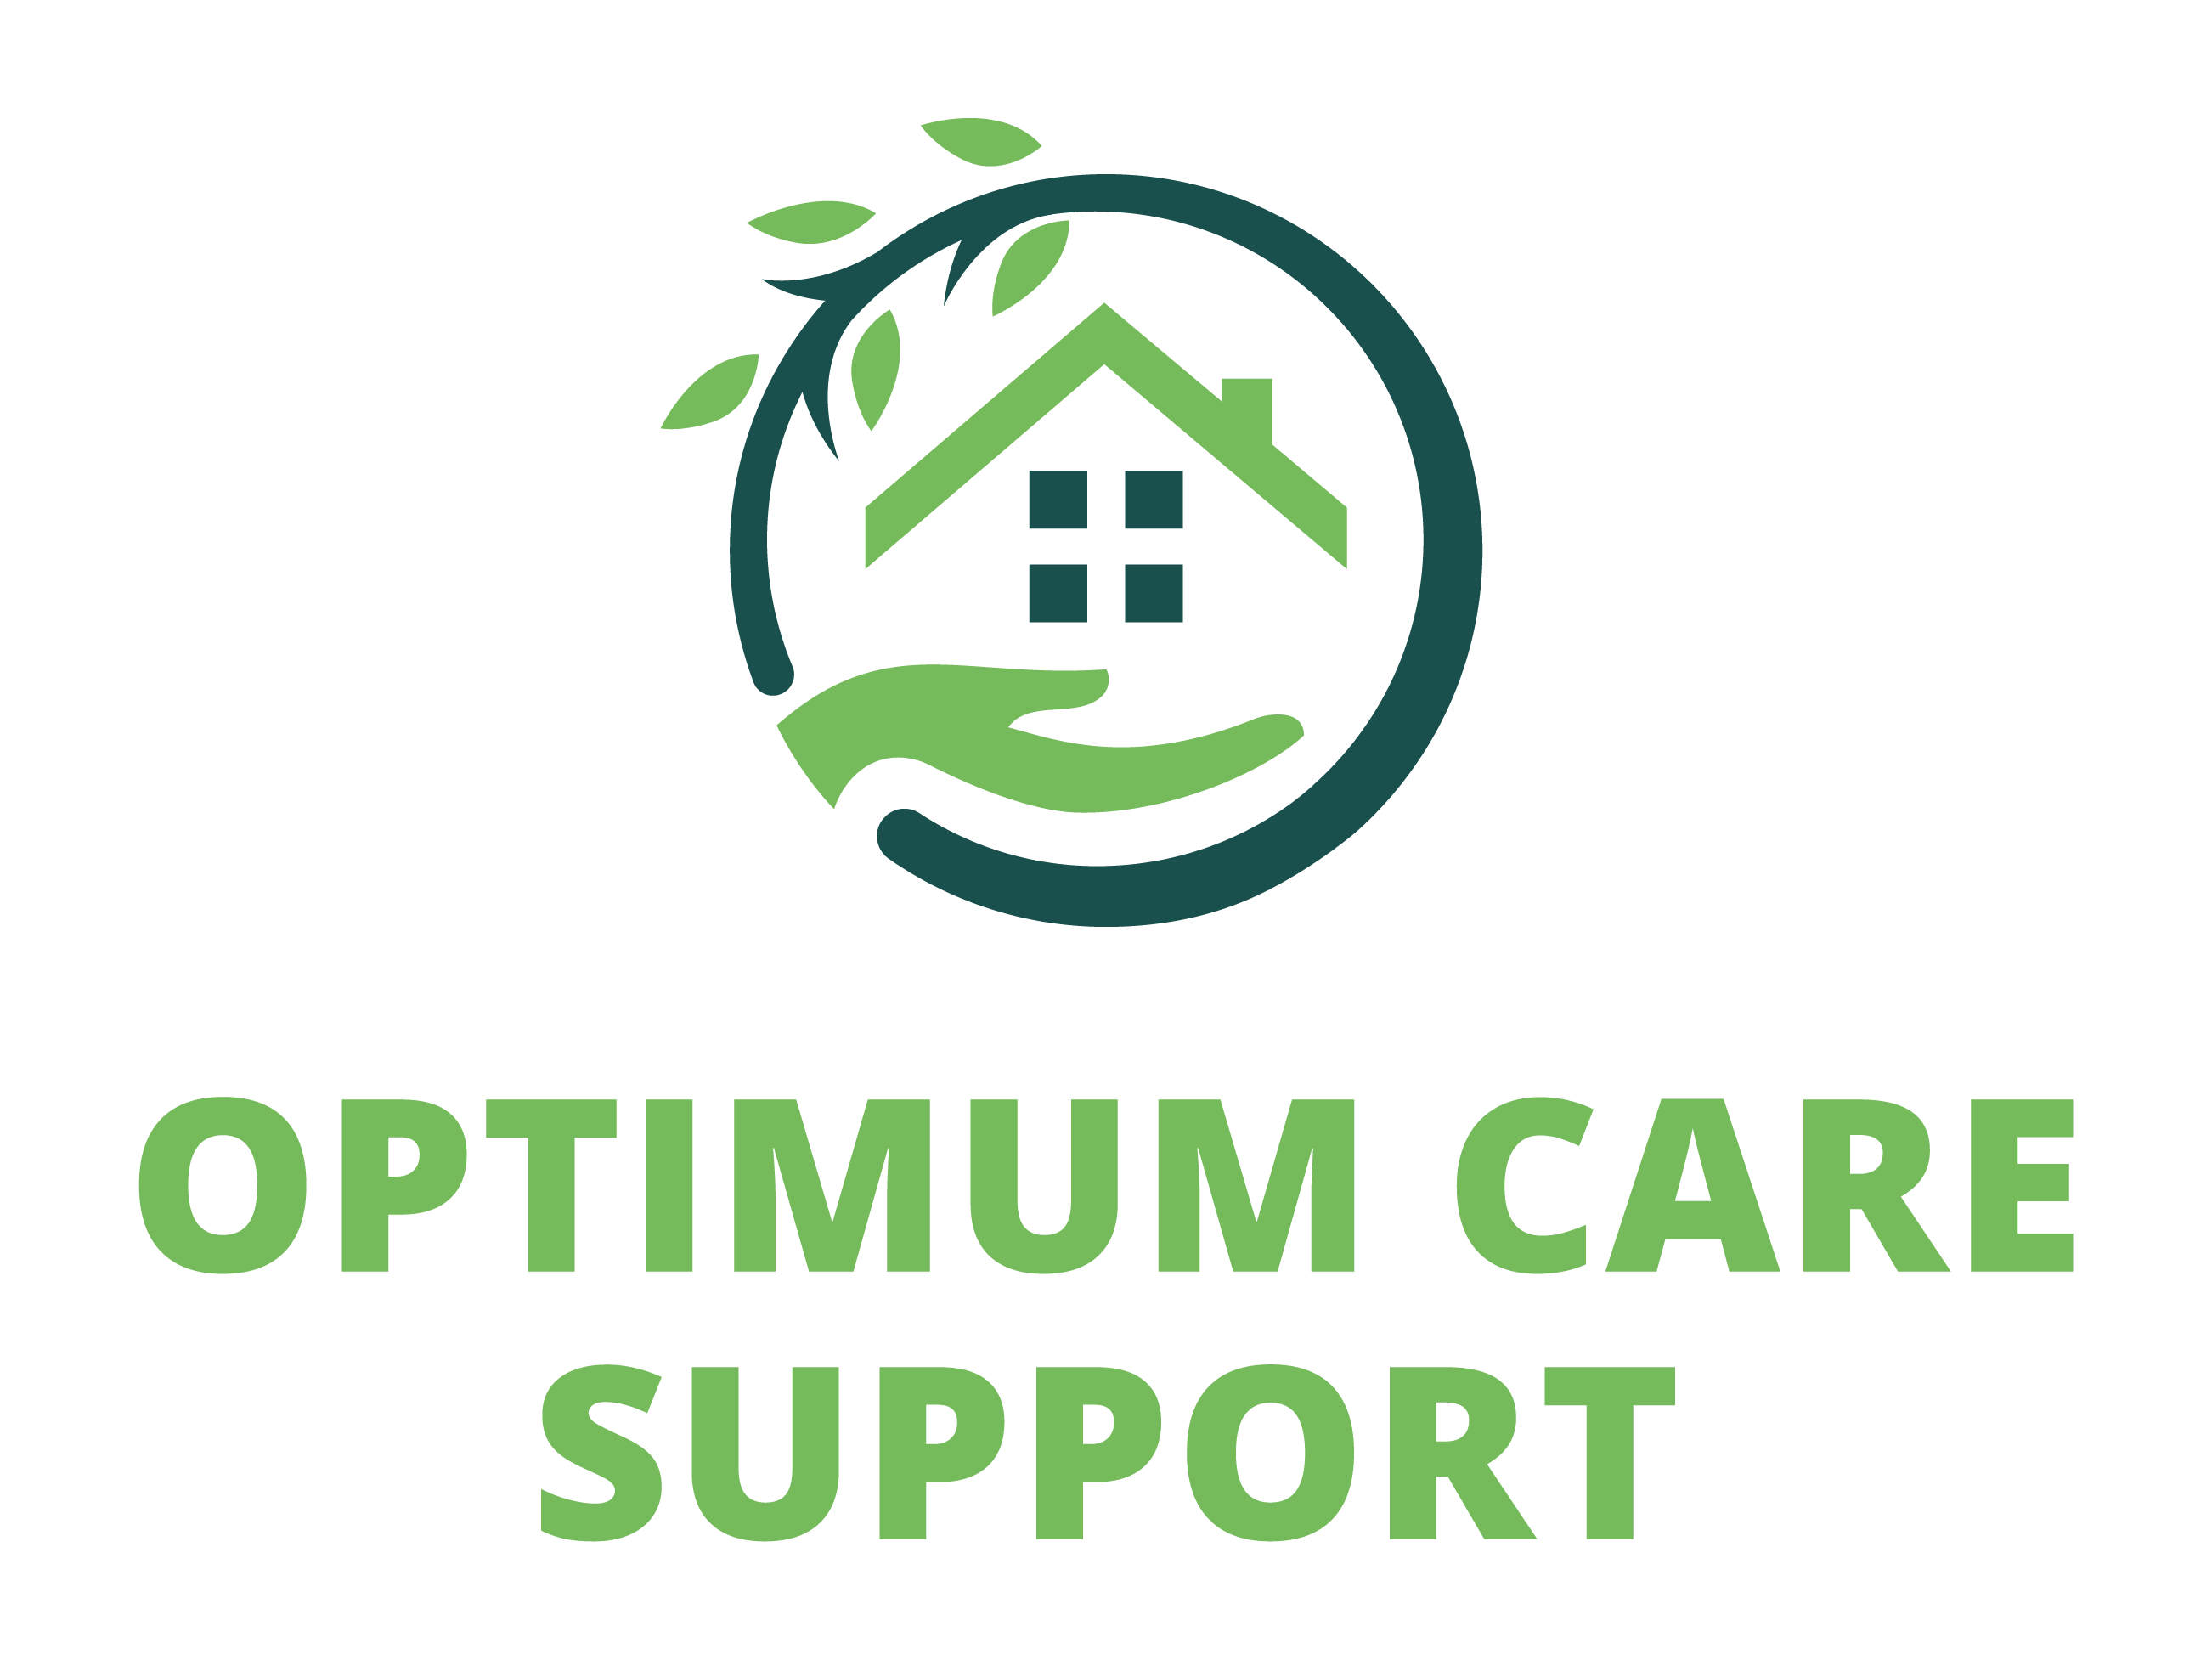 Optimum Care Support logo